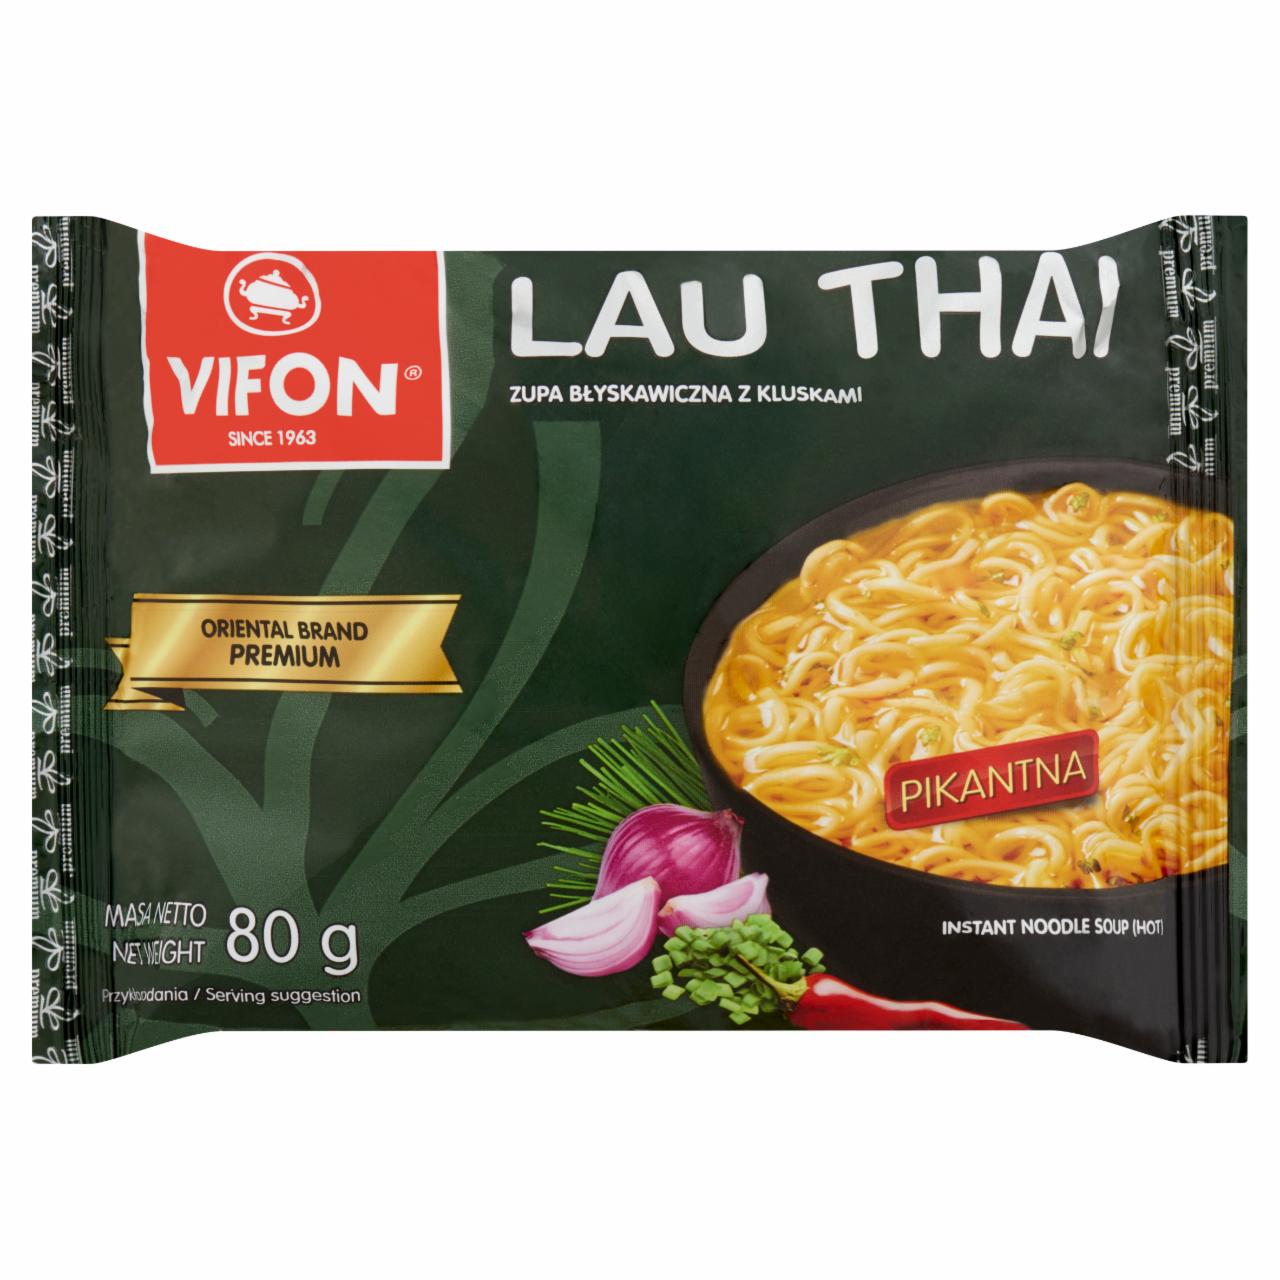 Képek - Vifon Lau Thai hagyományos thai csípős instant tésztás leves 80 g